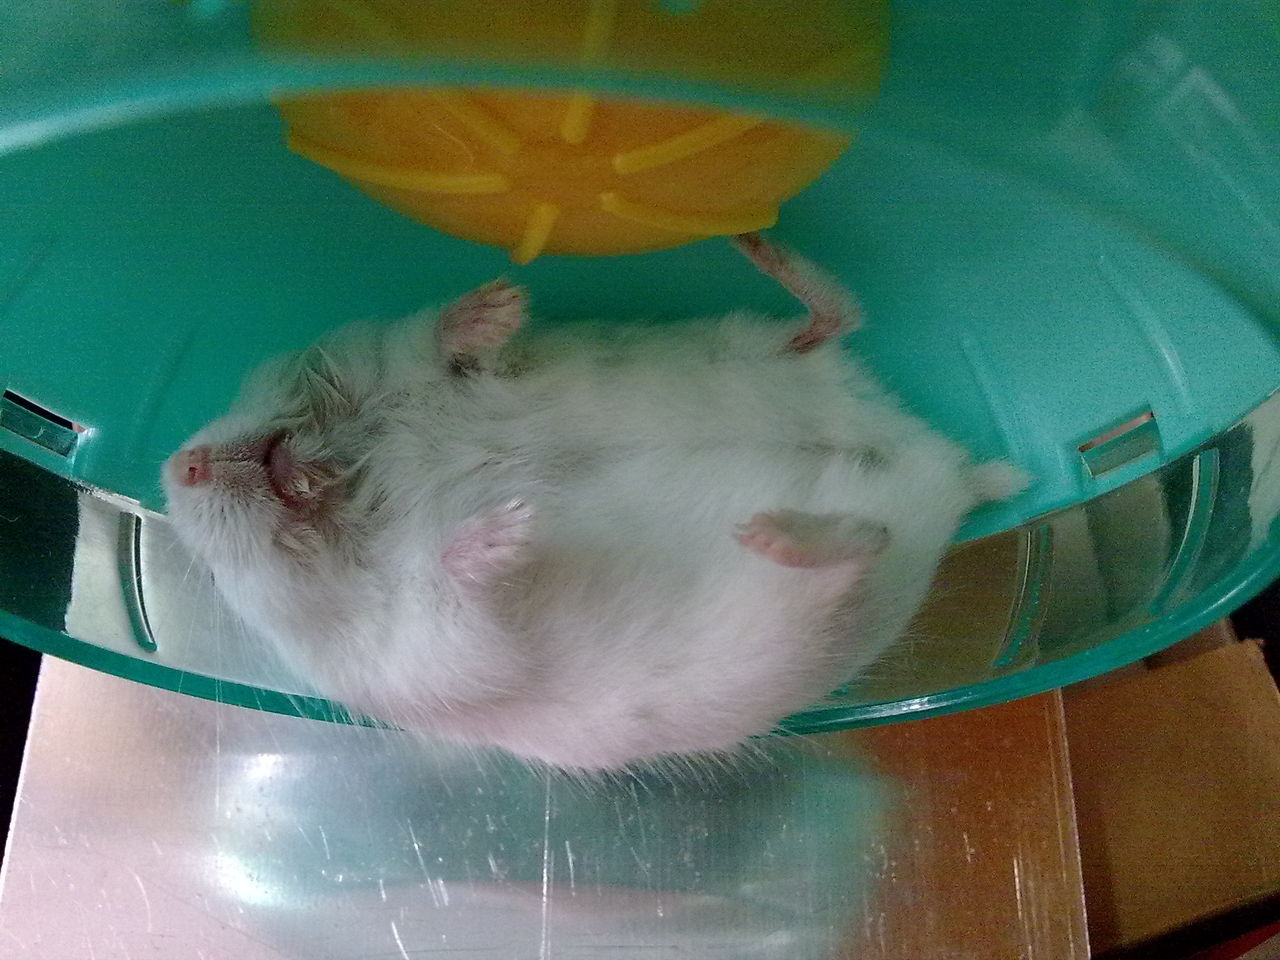 仓鼠睡觉环境图片